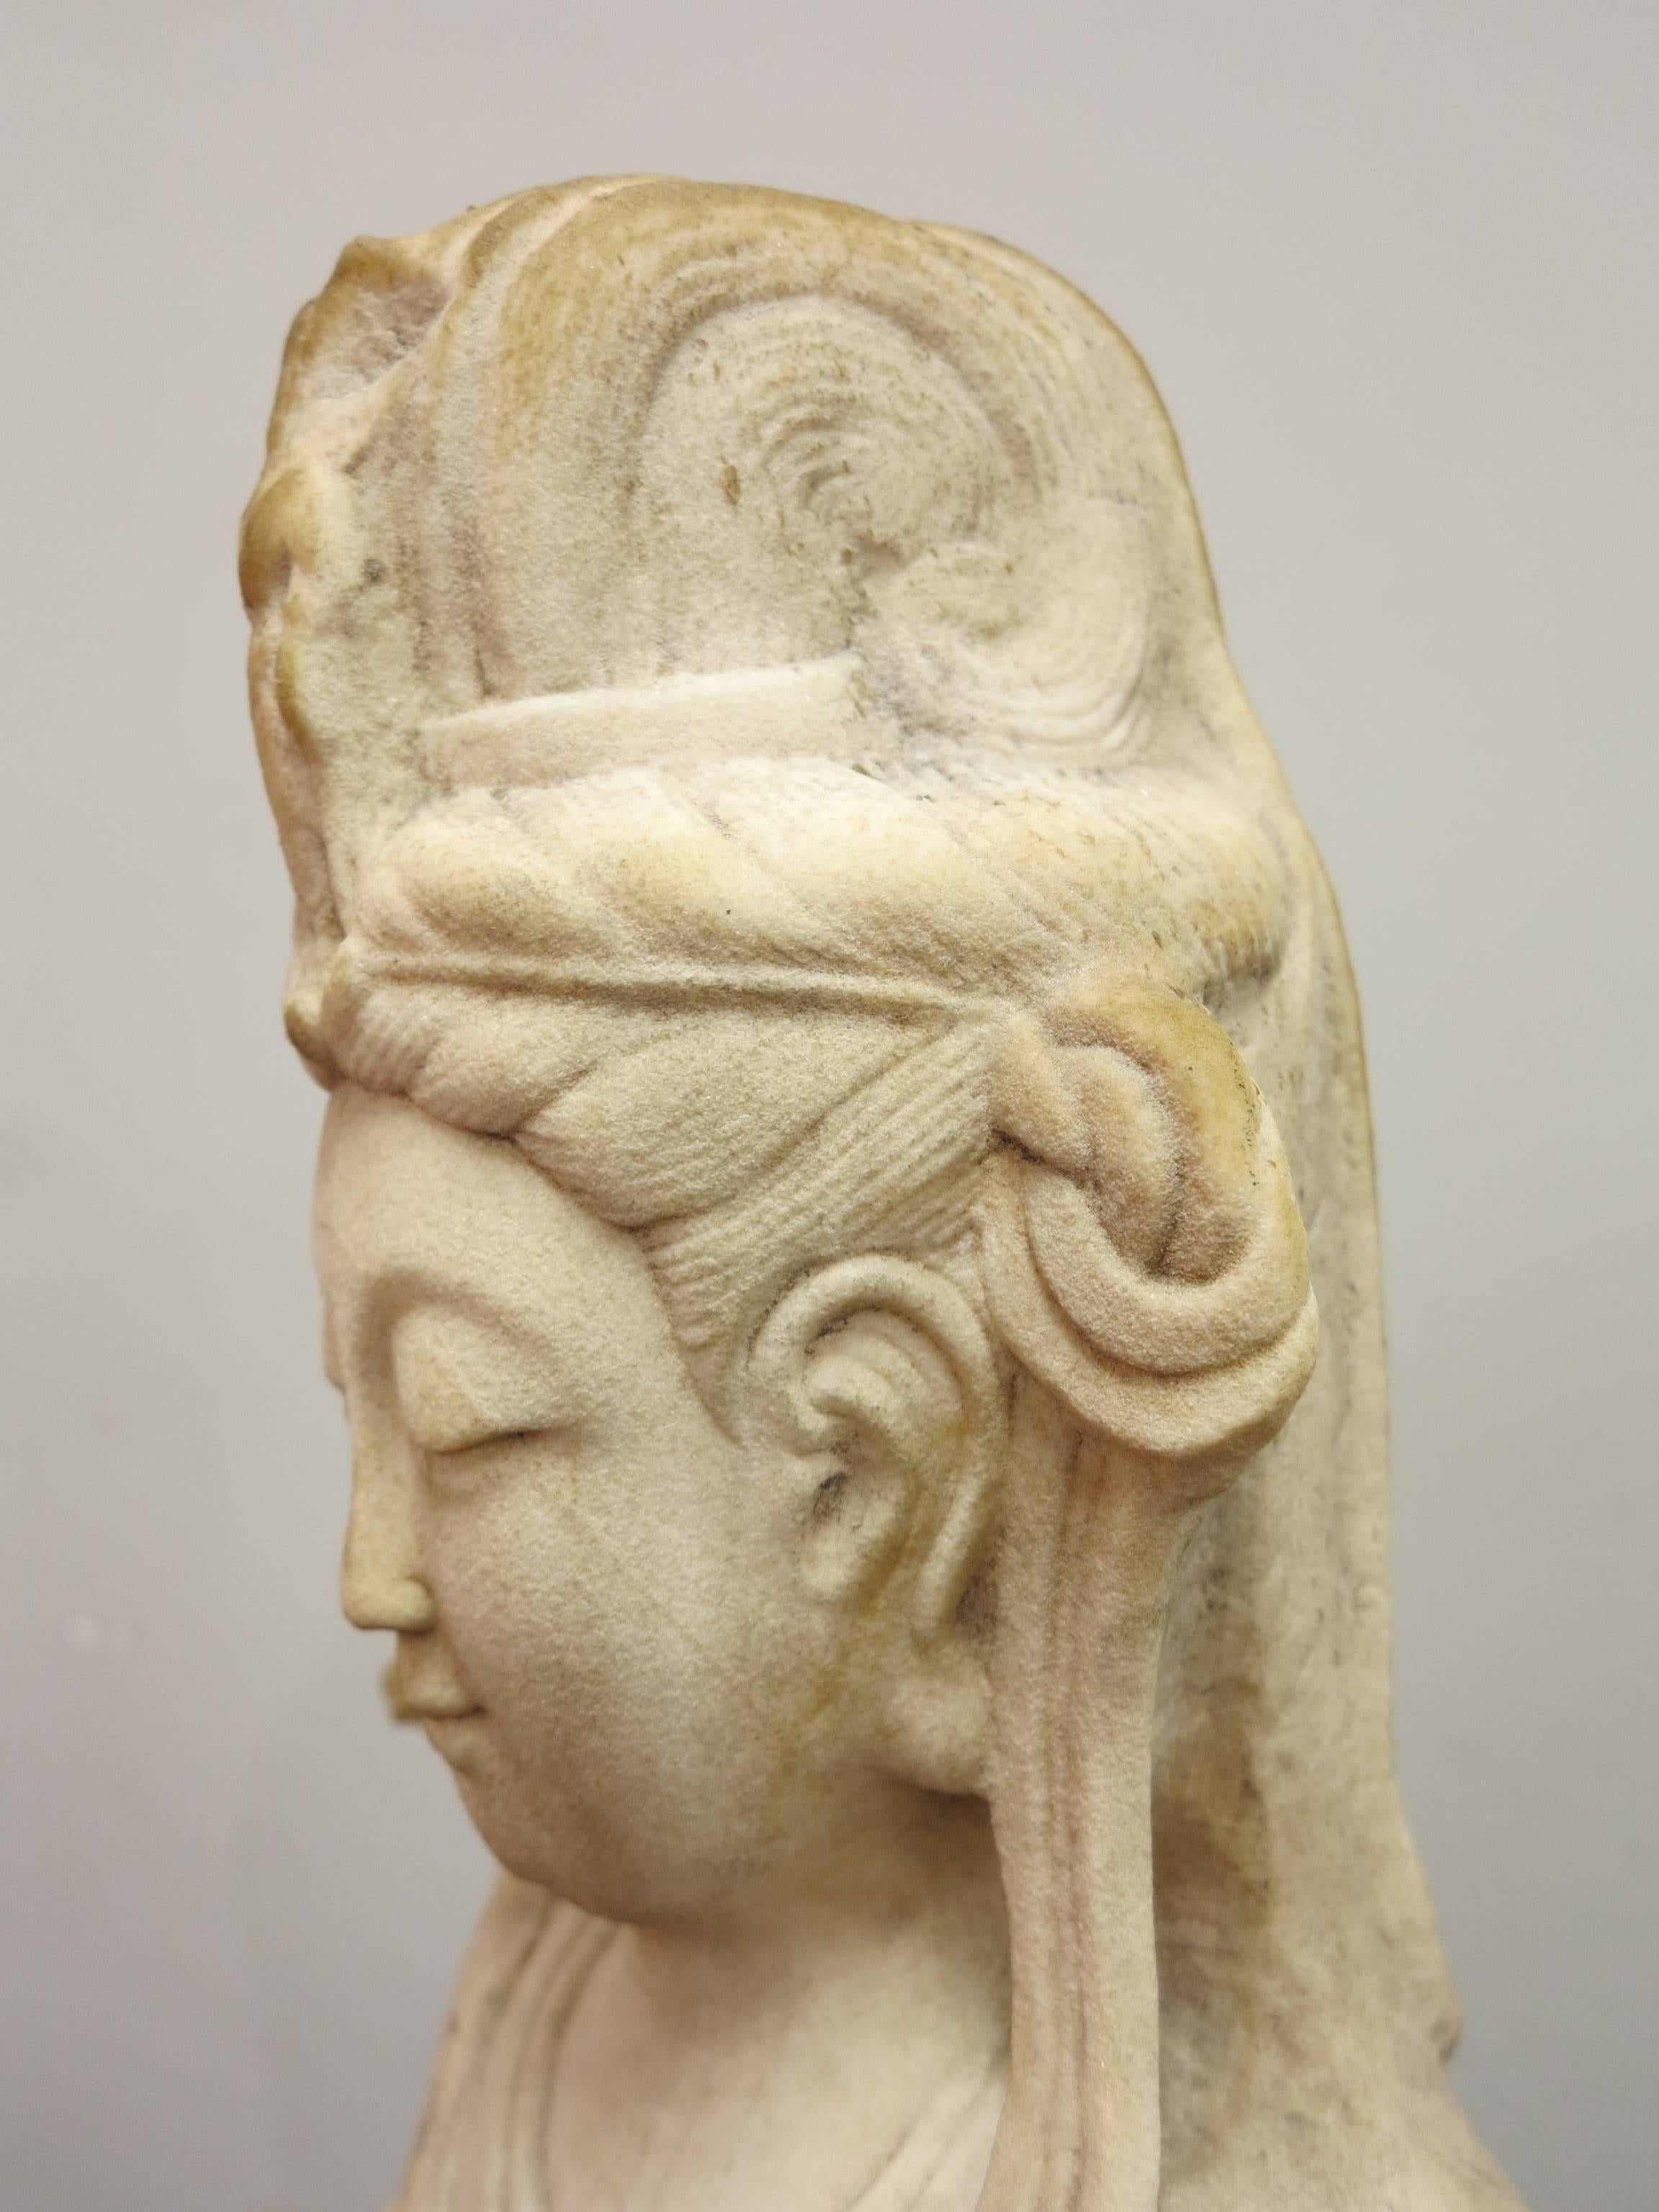 Antique standing Guan Yin Bodhisattva marble sculpture 1